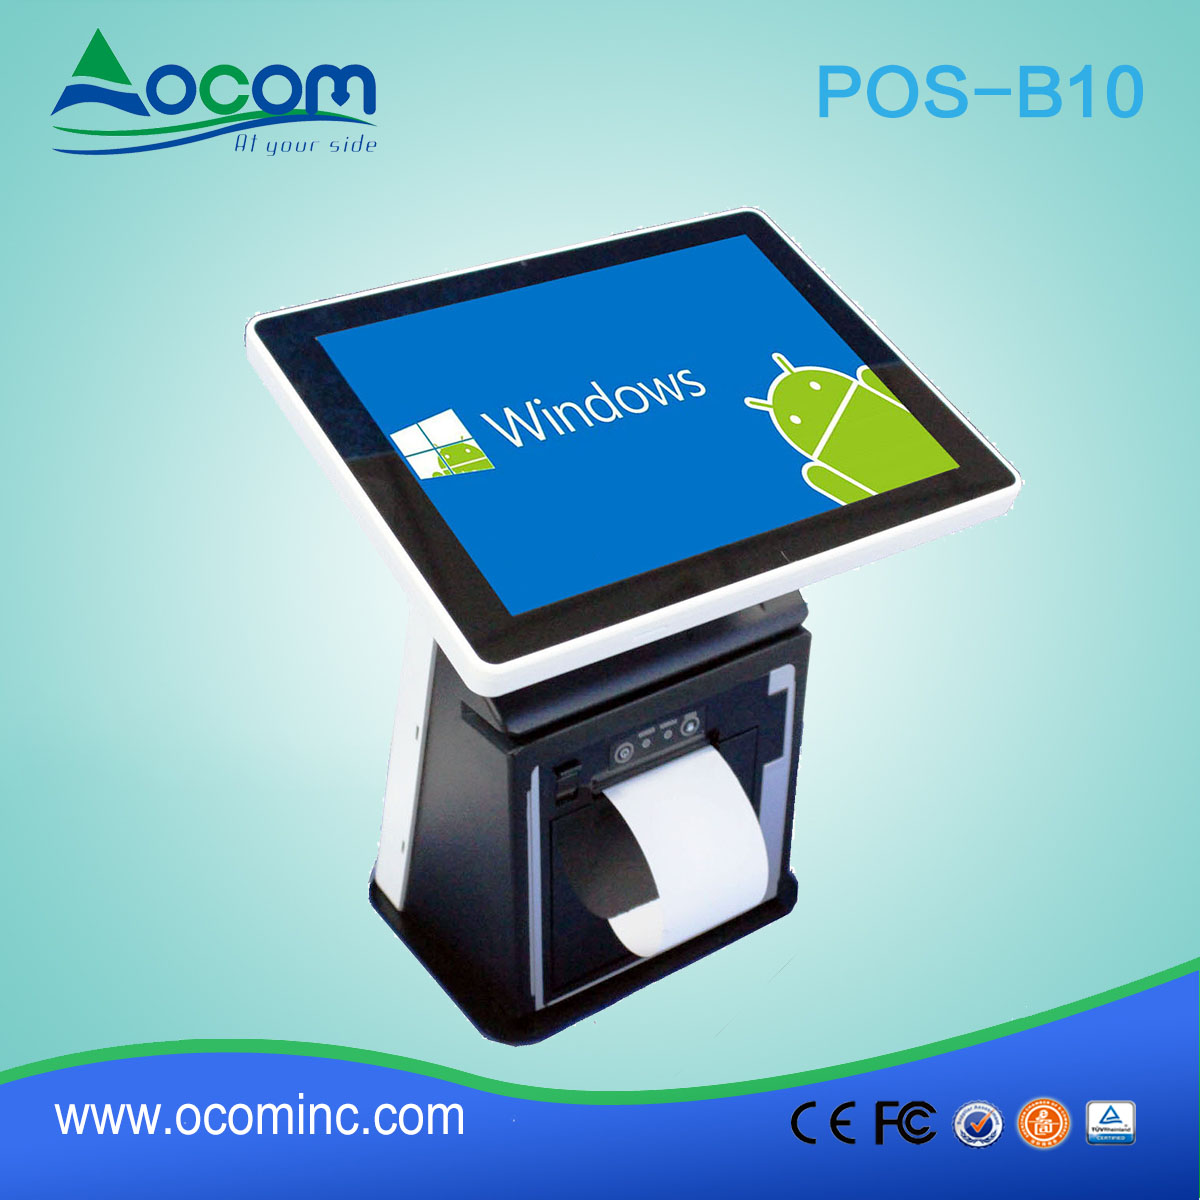 No MOQ 10 "capacitivo Touch Screen POS caixa registradora para salão de beleza com impressora